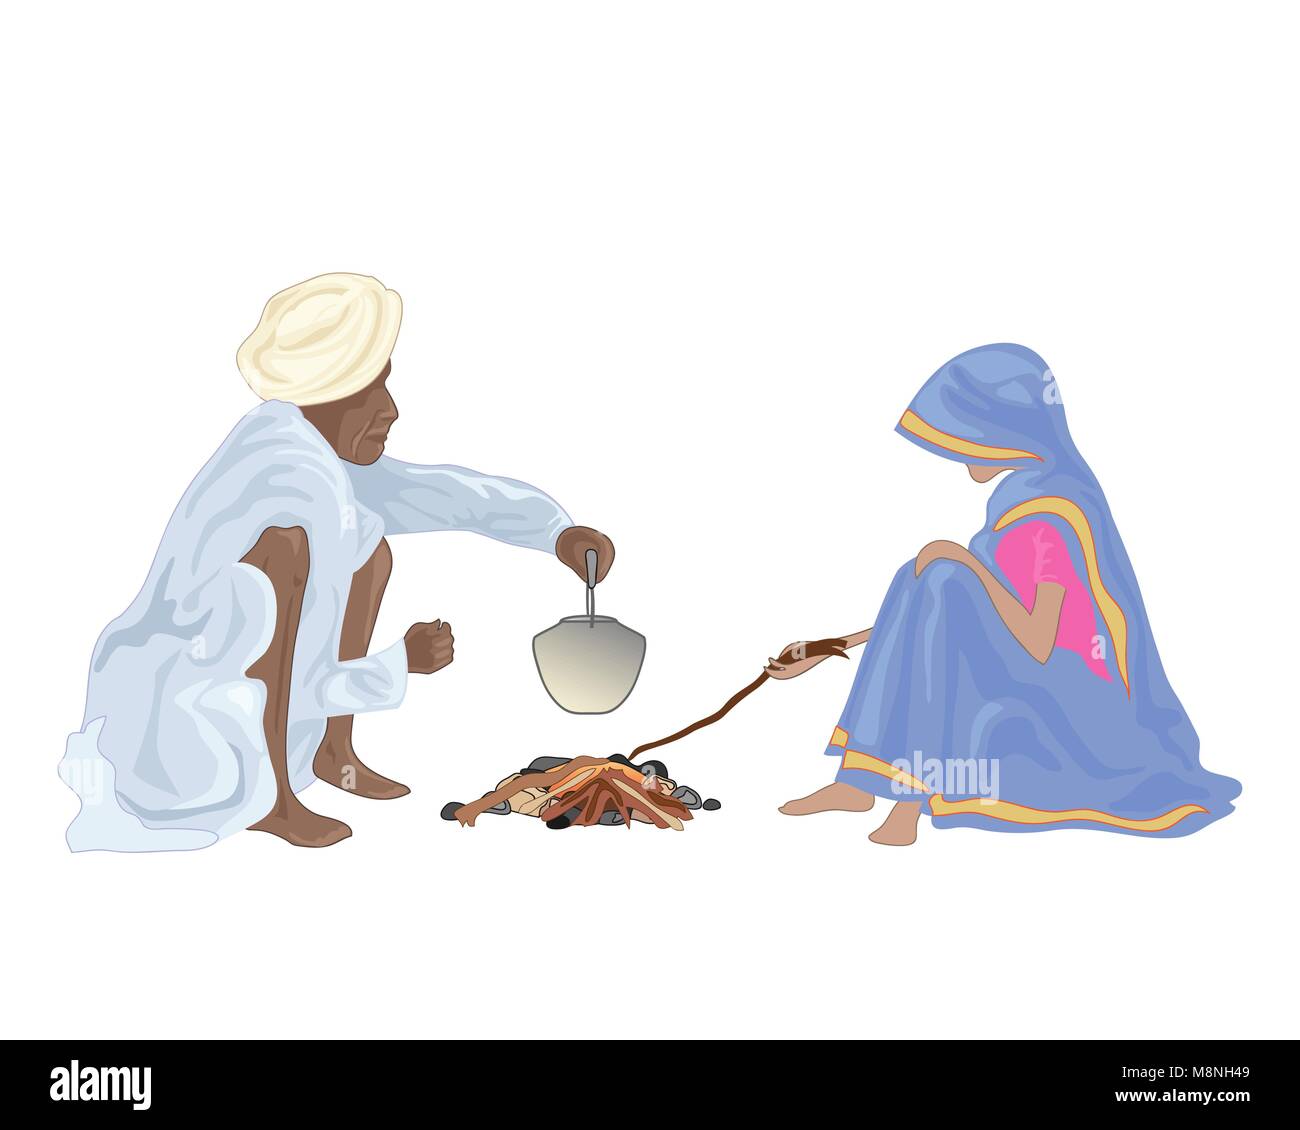 Un vecteur illustration en eps 10 format d'un couple indien faire du thé autour d'un petit feu avec un costume traditionnel sur un fond blanc Illustration de Vecteur